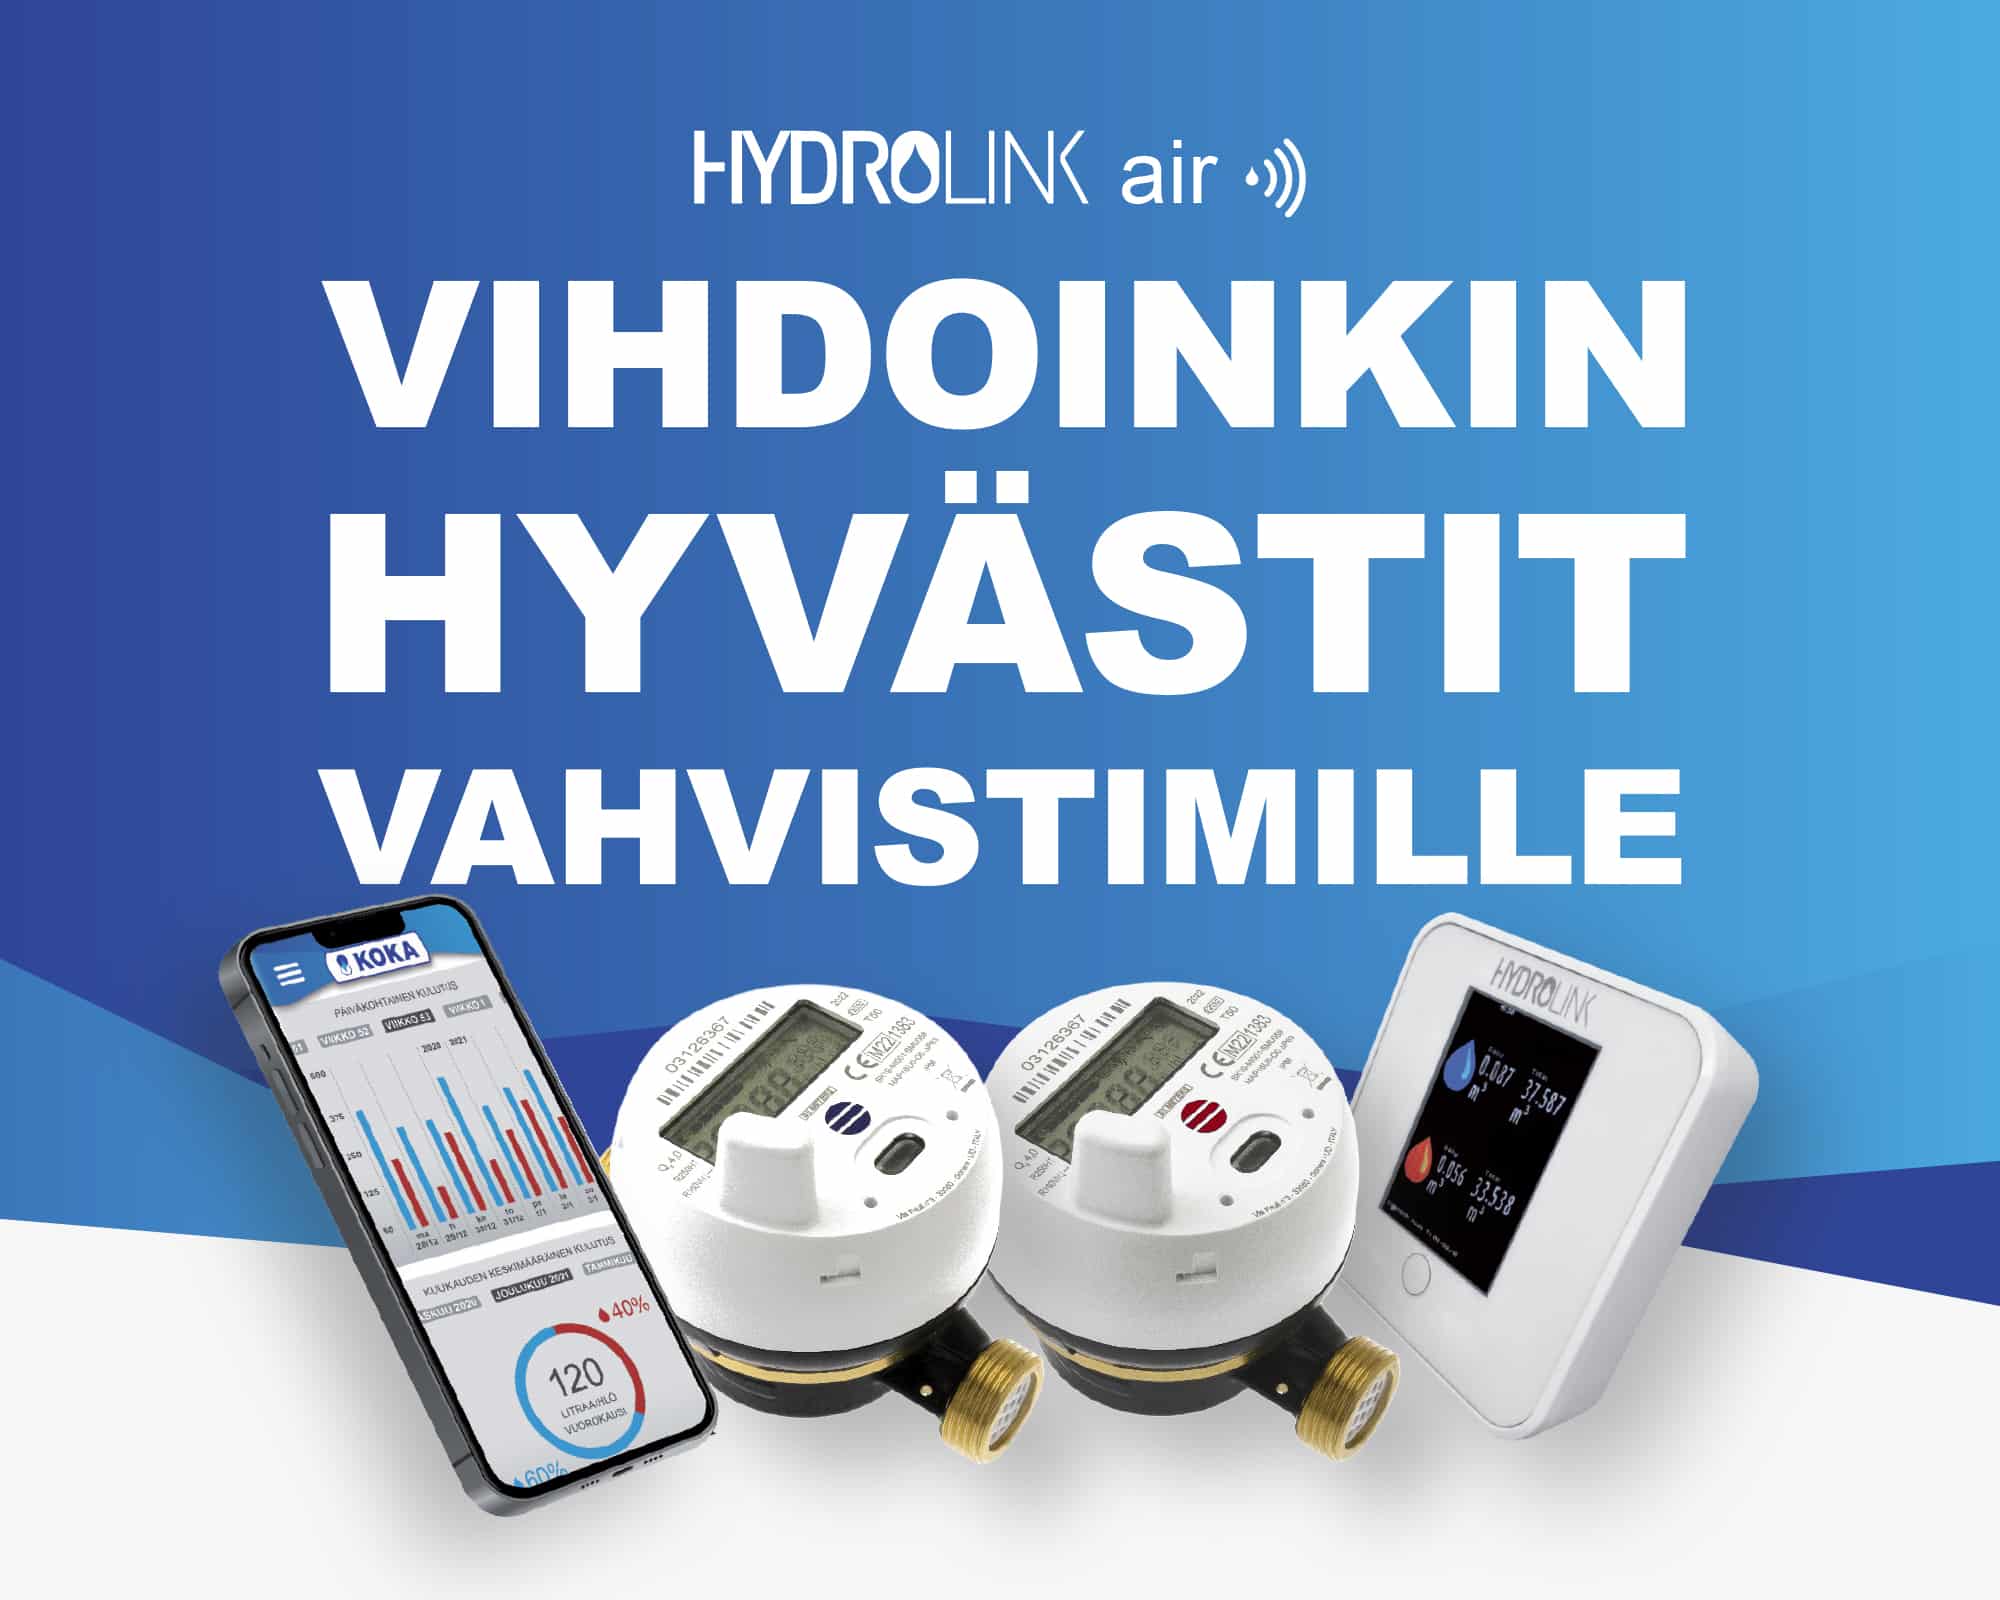 HYDROLINK Air